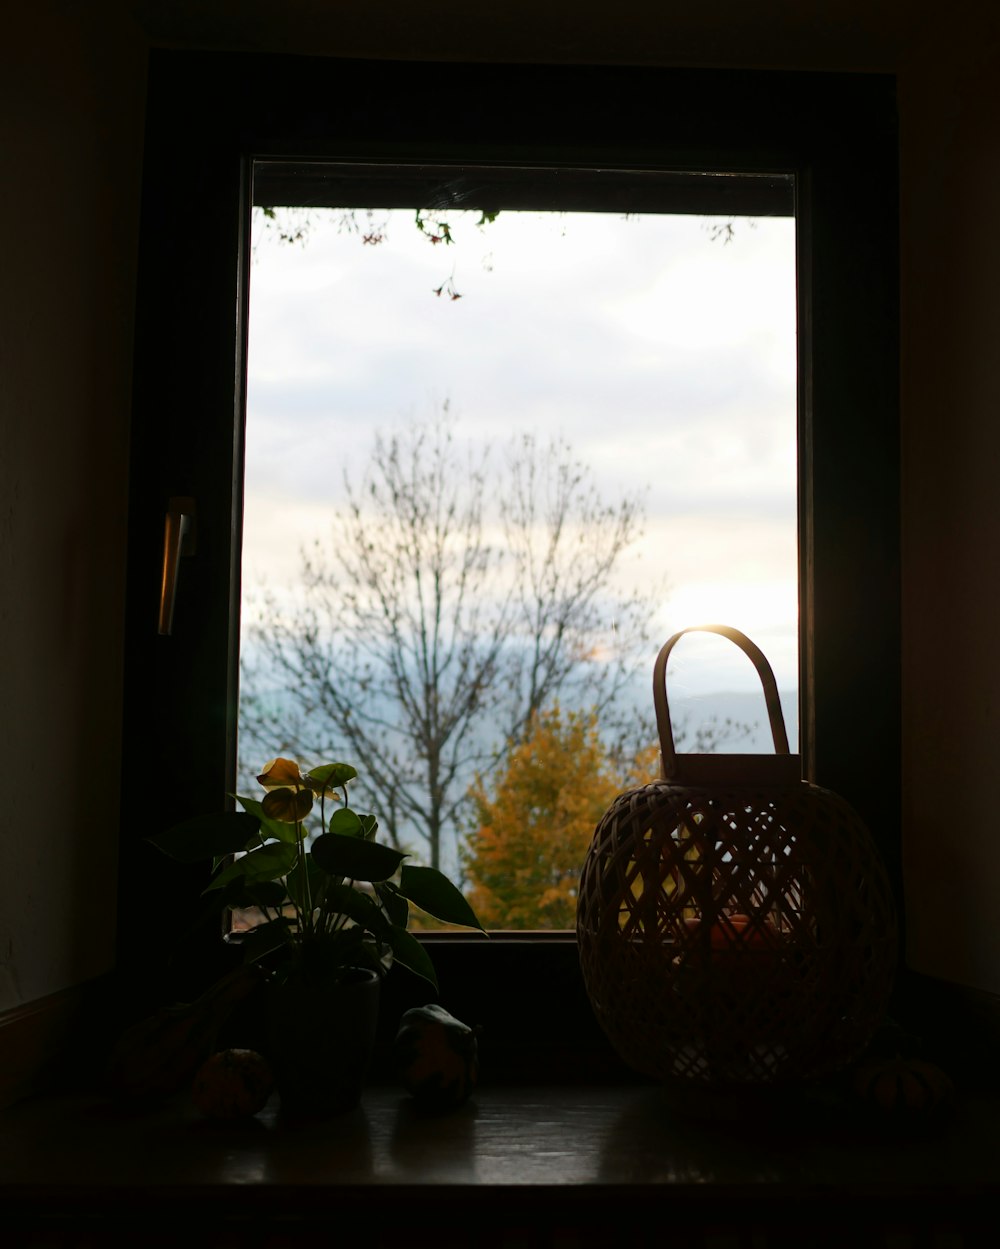 Una canasta sentada en el alféizar de una ventana junto a una planta en maceta